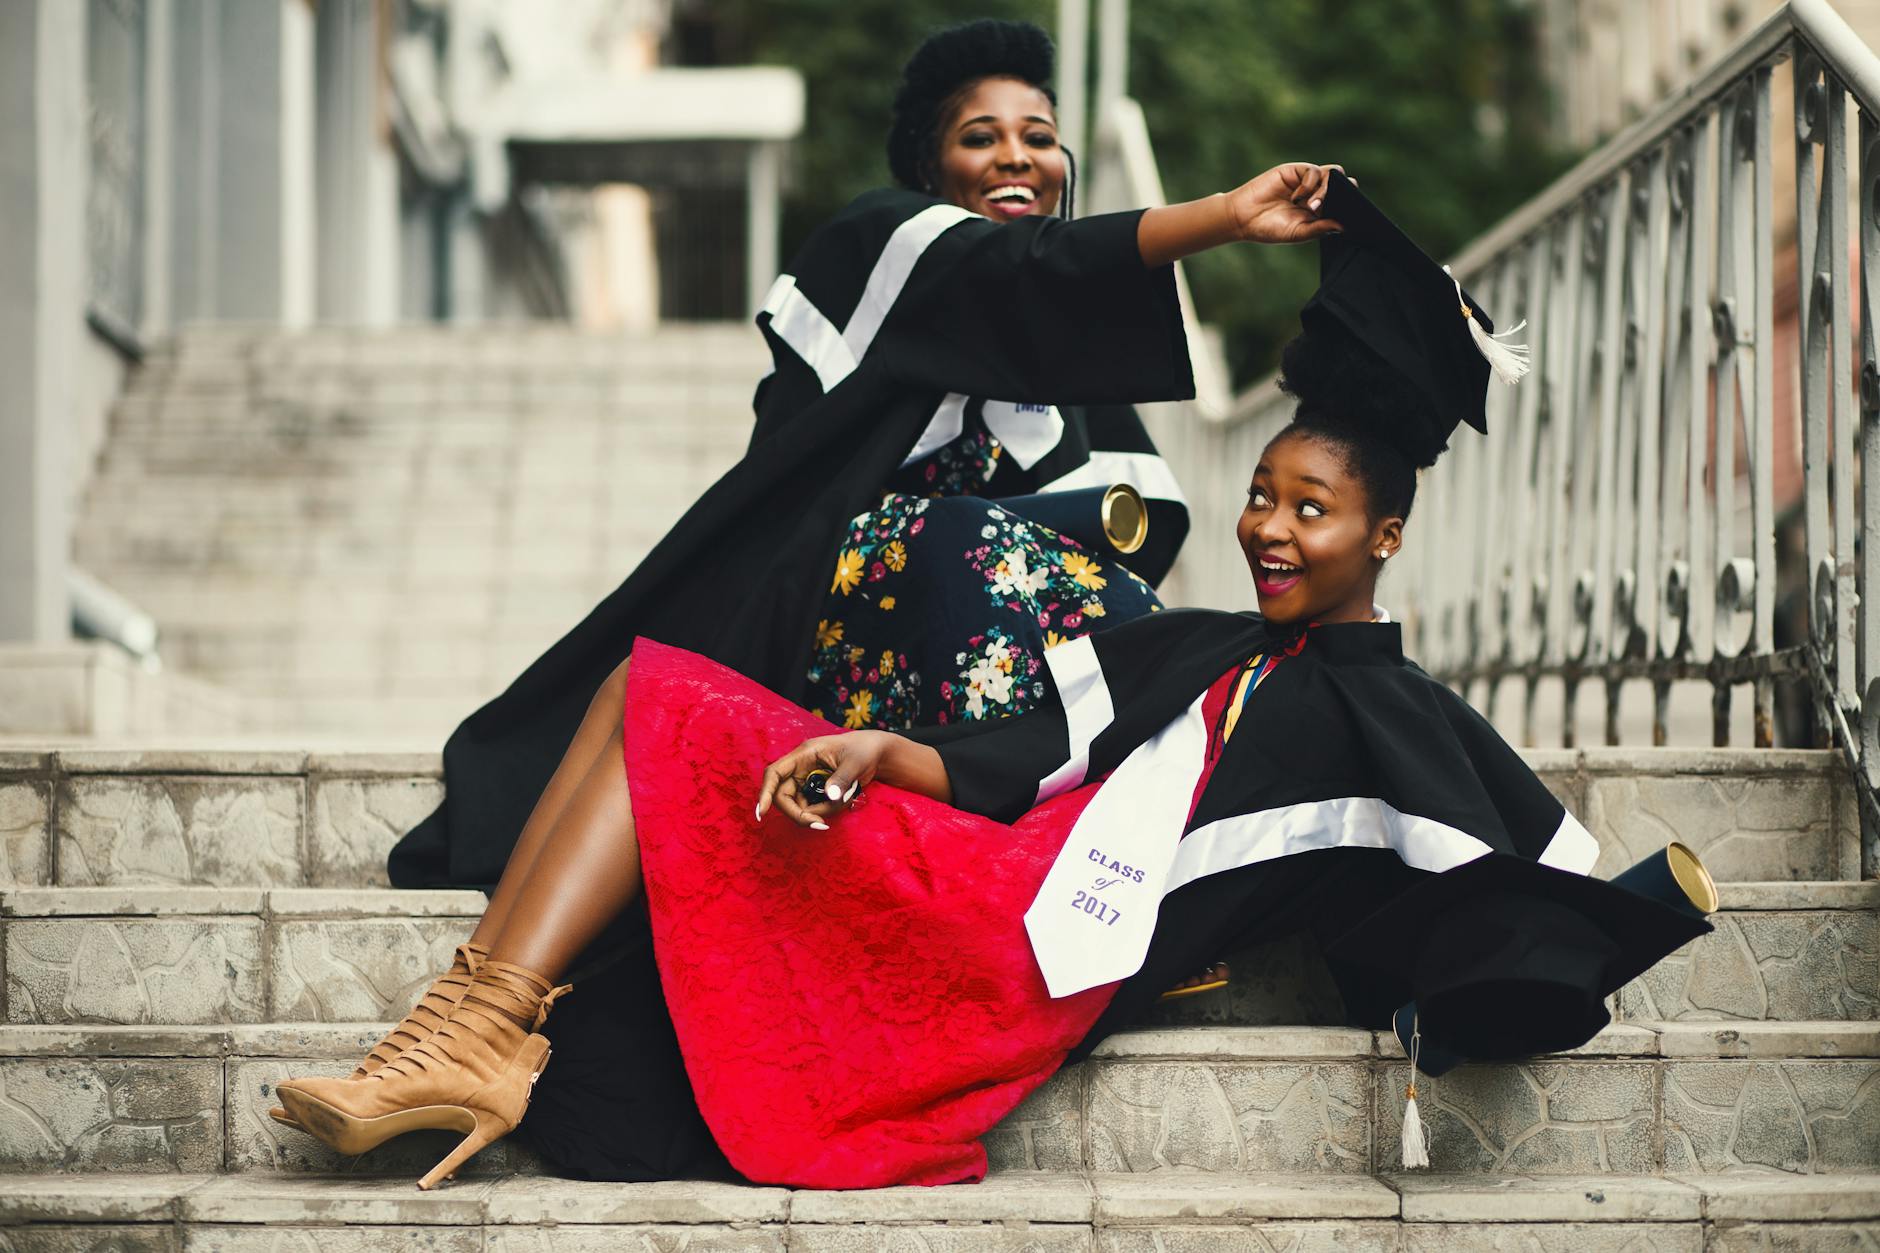 Shallow Focus Fotografie Von Zwei Frauen In Akademischer Kleidung Auf Treppen